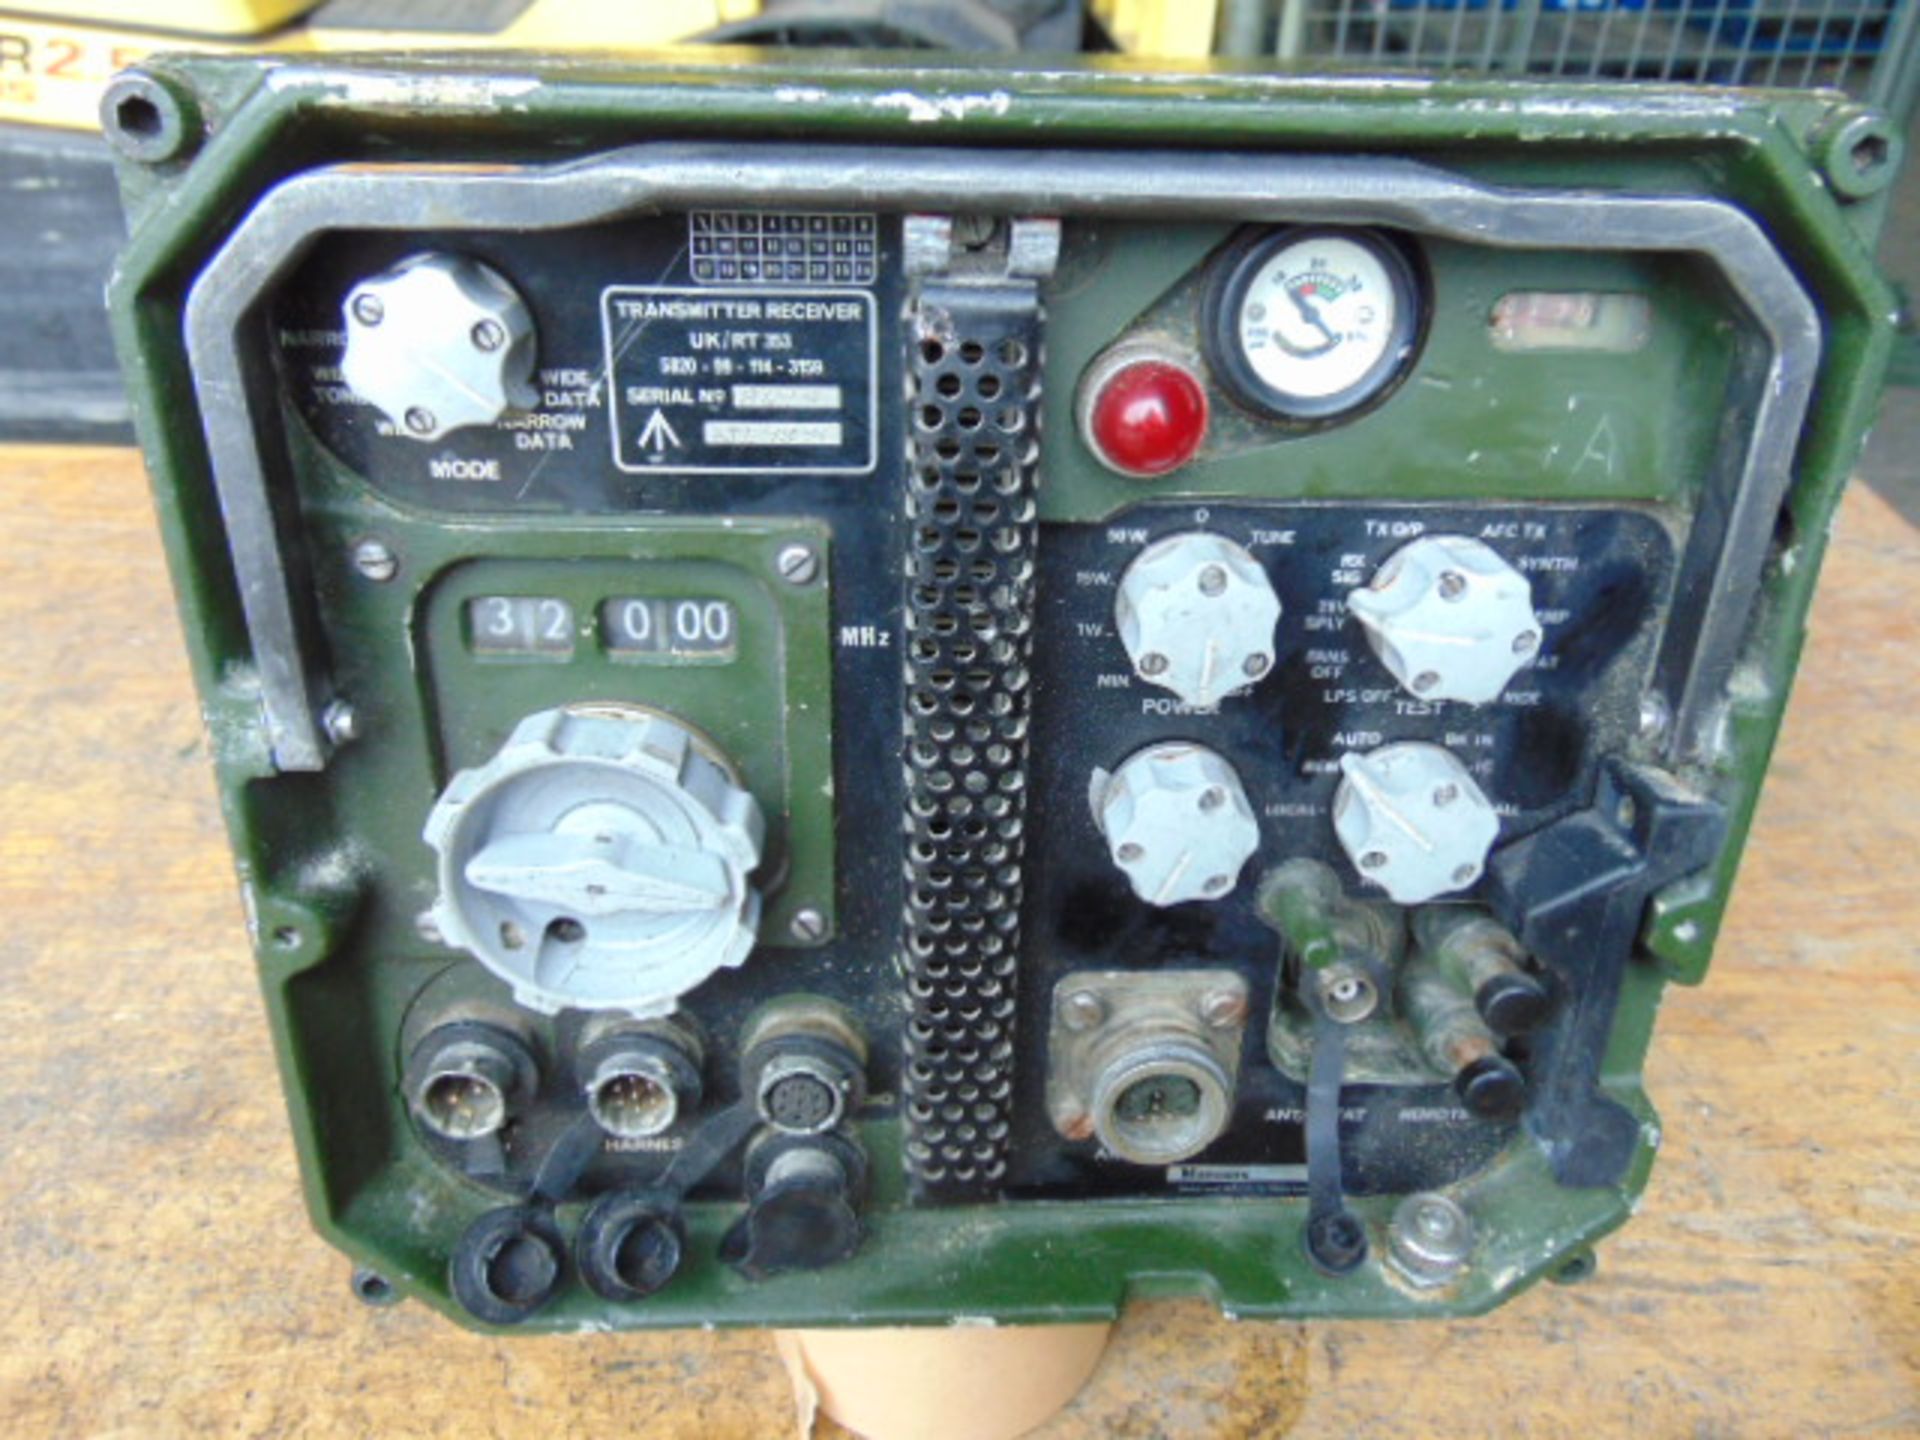 Clansman Transmitter Receiver UK/RT 353 - Image 2 of 6